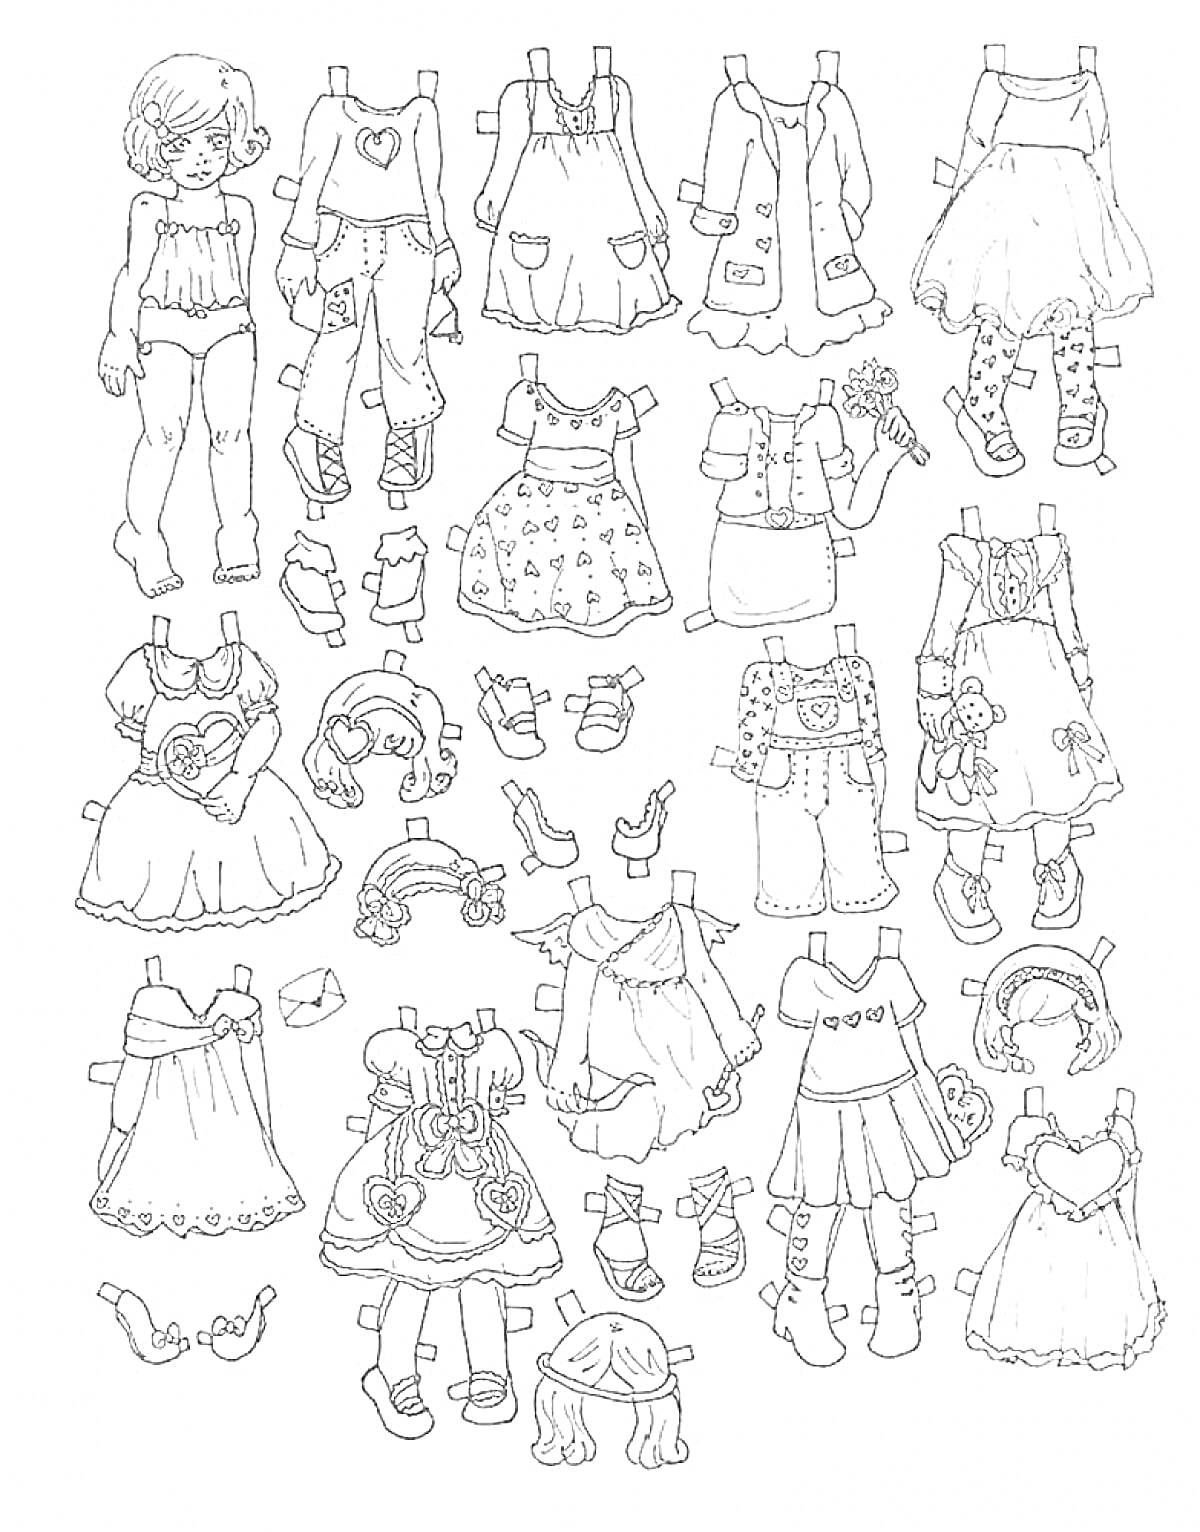 Бумажная кукла с гардеробом, включающим повседневную и праздничную одежду, головные уборы, обувь и аксессуары